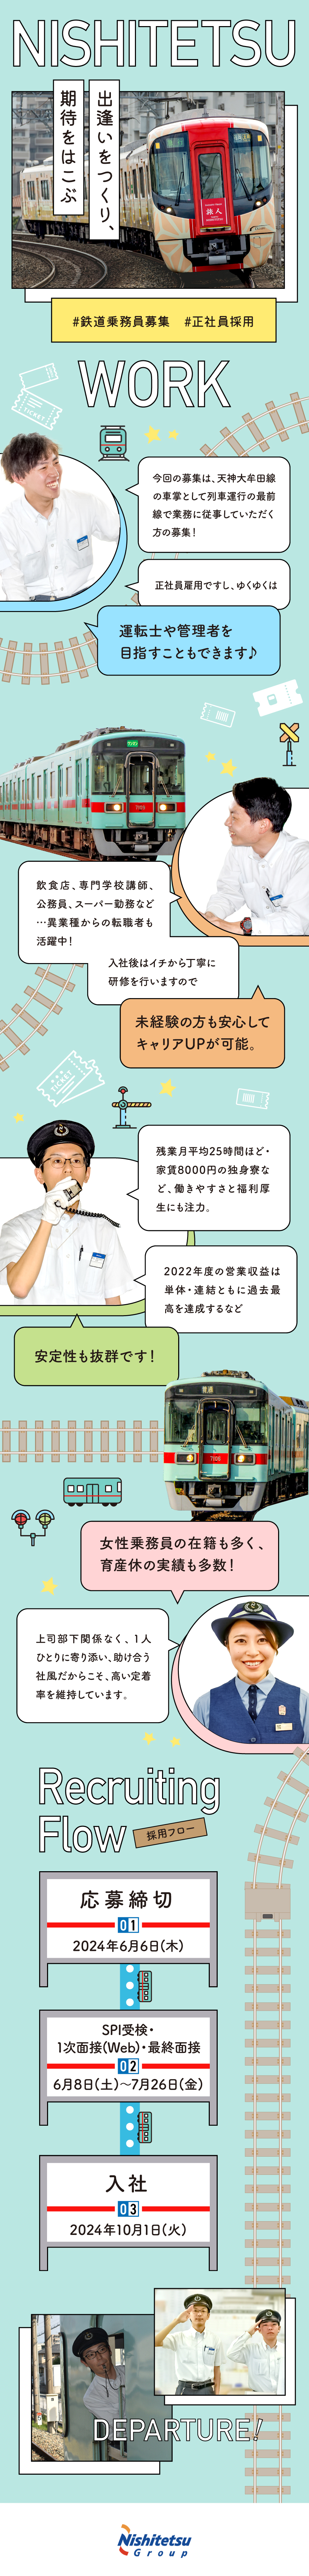 西日本鉄道株式会社からのメッセージ